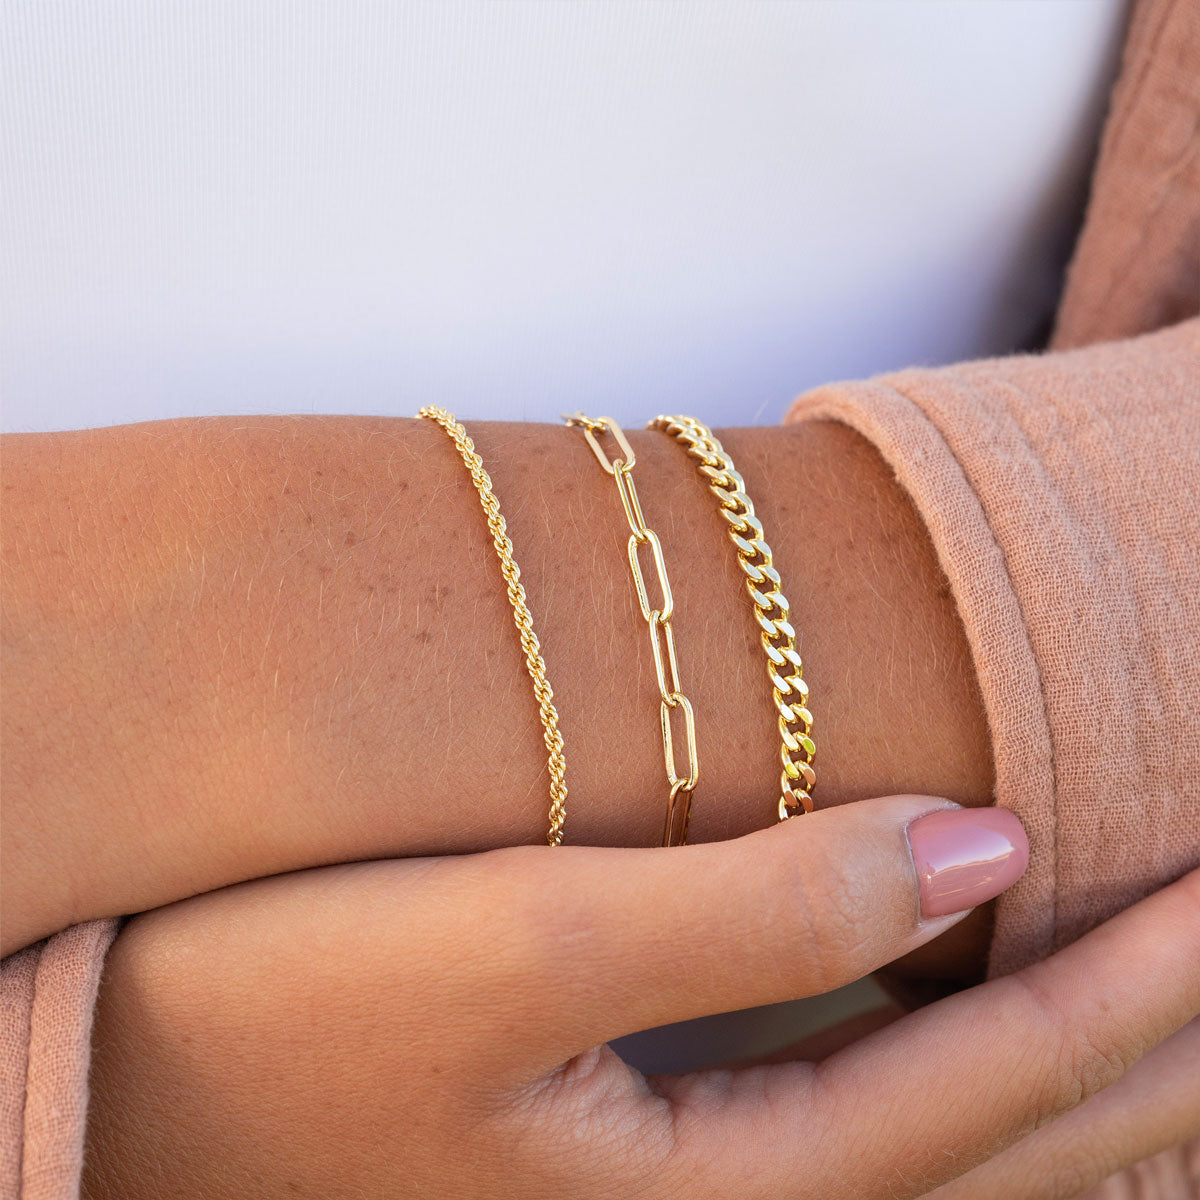 Dainty gold layered bracelets on wrist